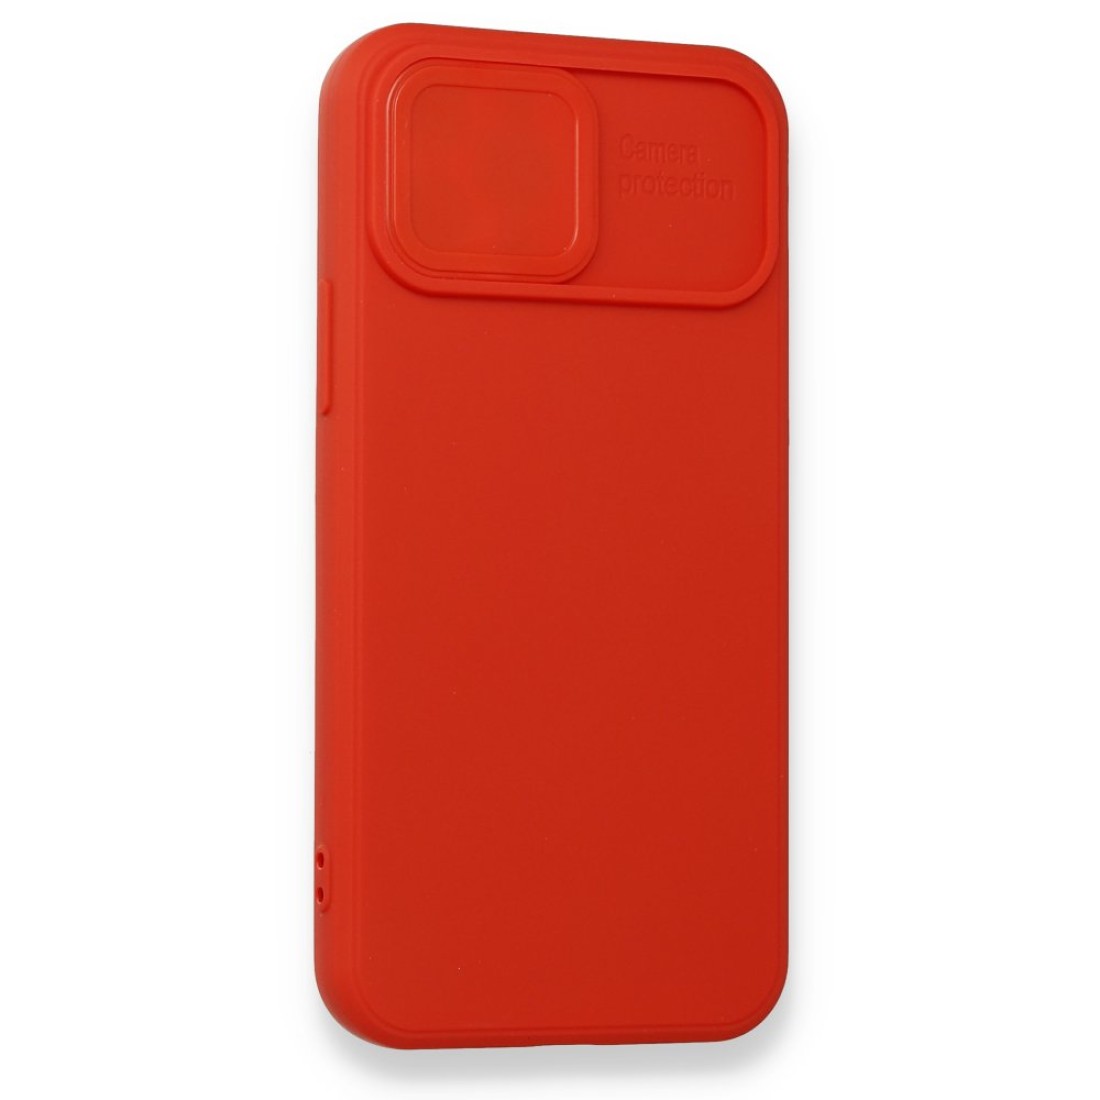 Apple iPhone 12 Pro Kılıf Color Lens Silikon - Kırmızı